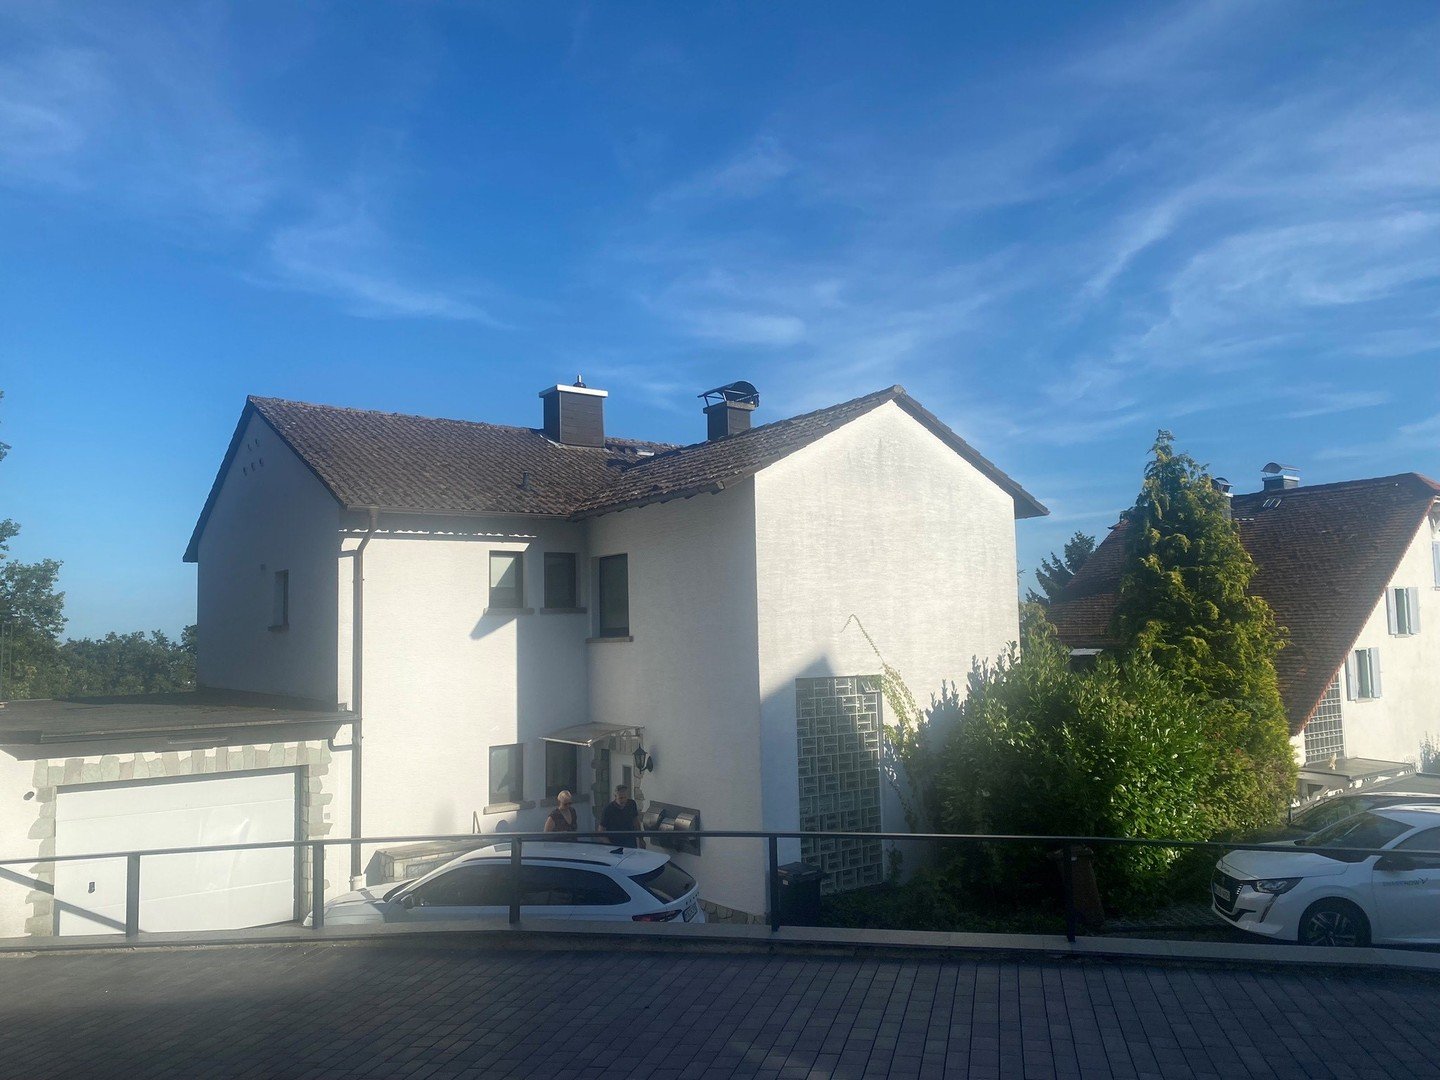 2-Fam.-Haus in attraktiver Lage für Kapitalanleger oder Selbstnutzer in Königstein OT Mammolshain